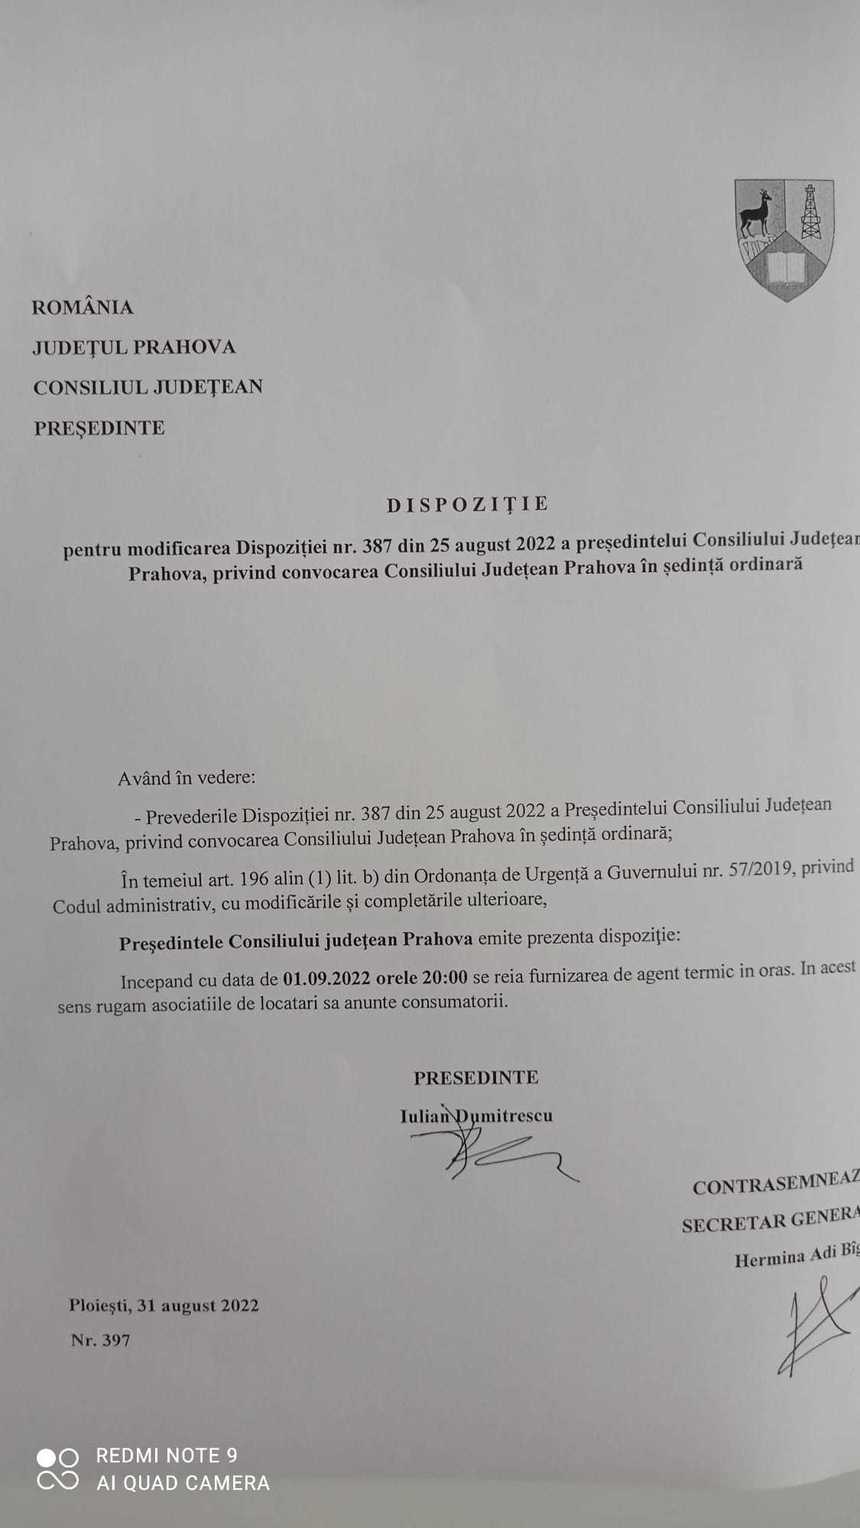 Consiliul Judeţean Prahova anunţă că sesizează Poliţia, după ce în Ploieşti a circulat, pe WhatsApp, un document întocmit în fals şi care conţine semnături ale şefilor instituţiei şi sigla acesteia